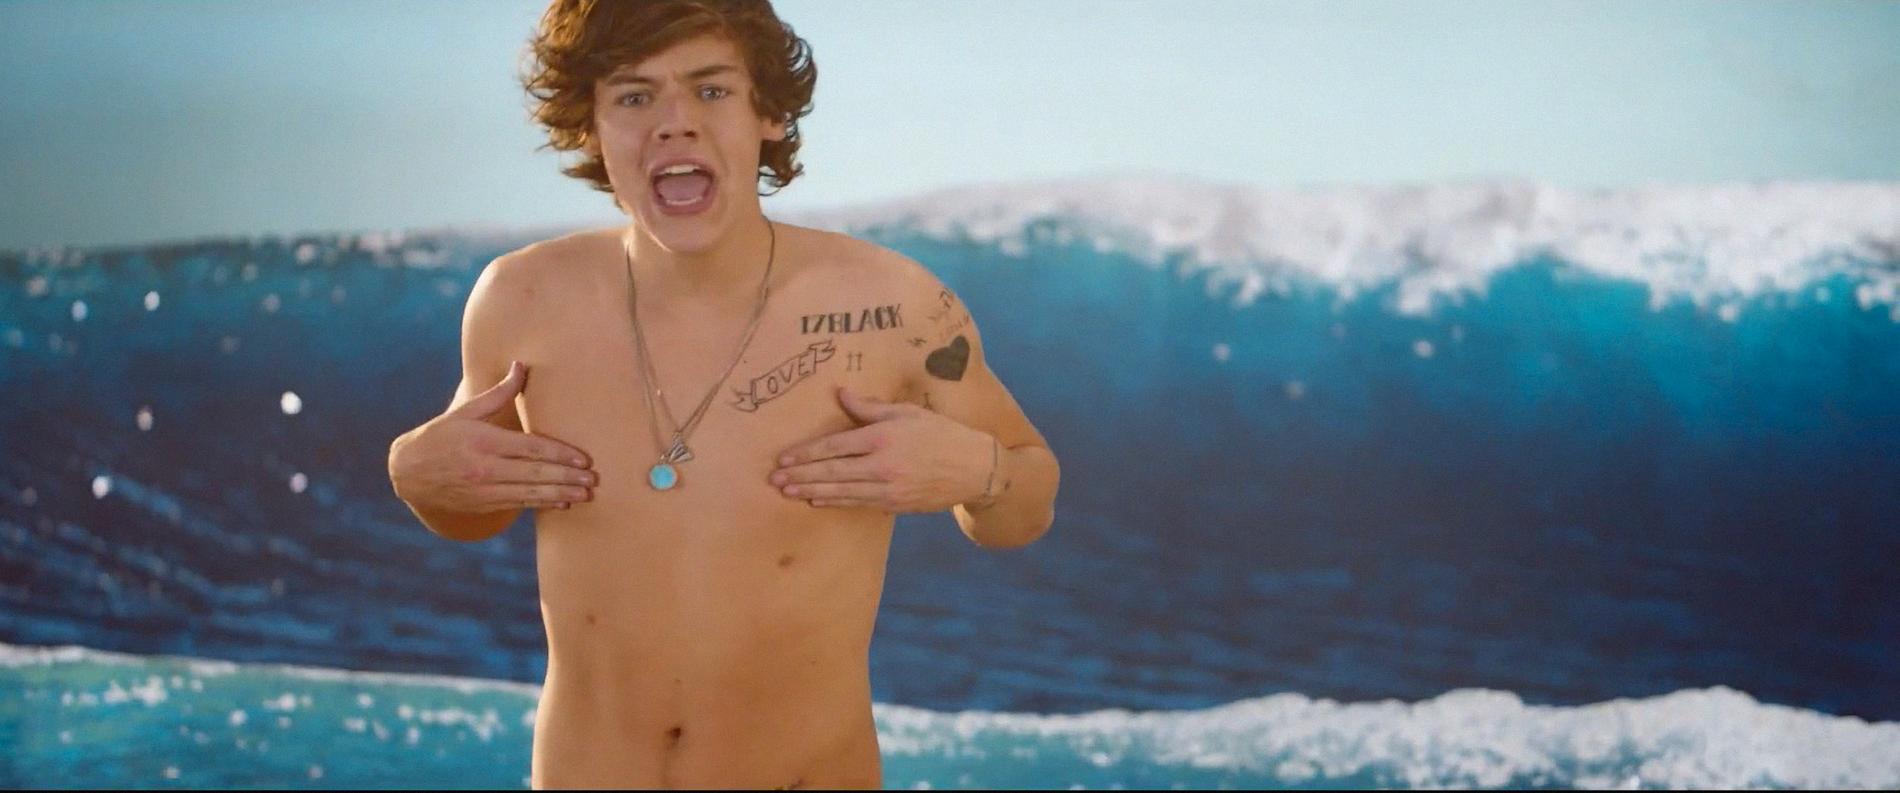 Heta Harry badar Ibland blir det varmt för Harry. Då tar han av sig skjortan.